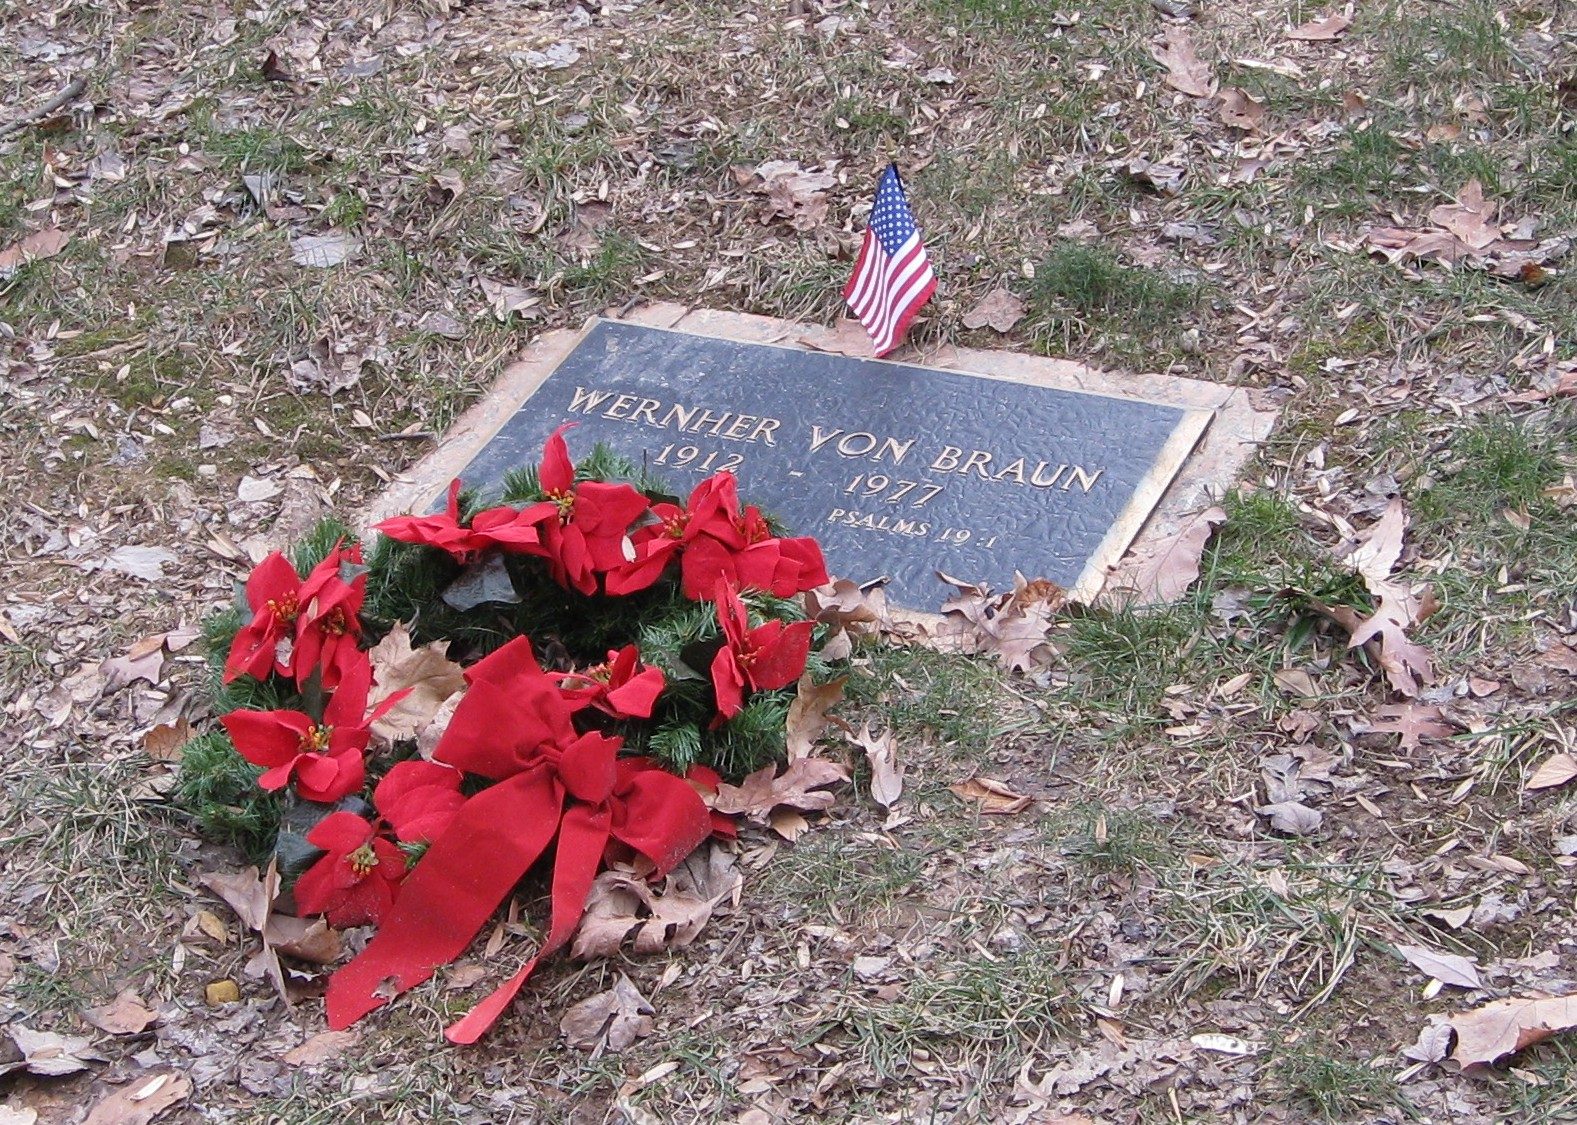 شاهد قبر فون براون في ولاية فرجينيا الأمريكية 1977 - WikiMedia Commons